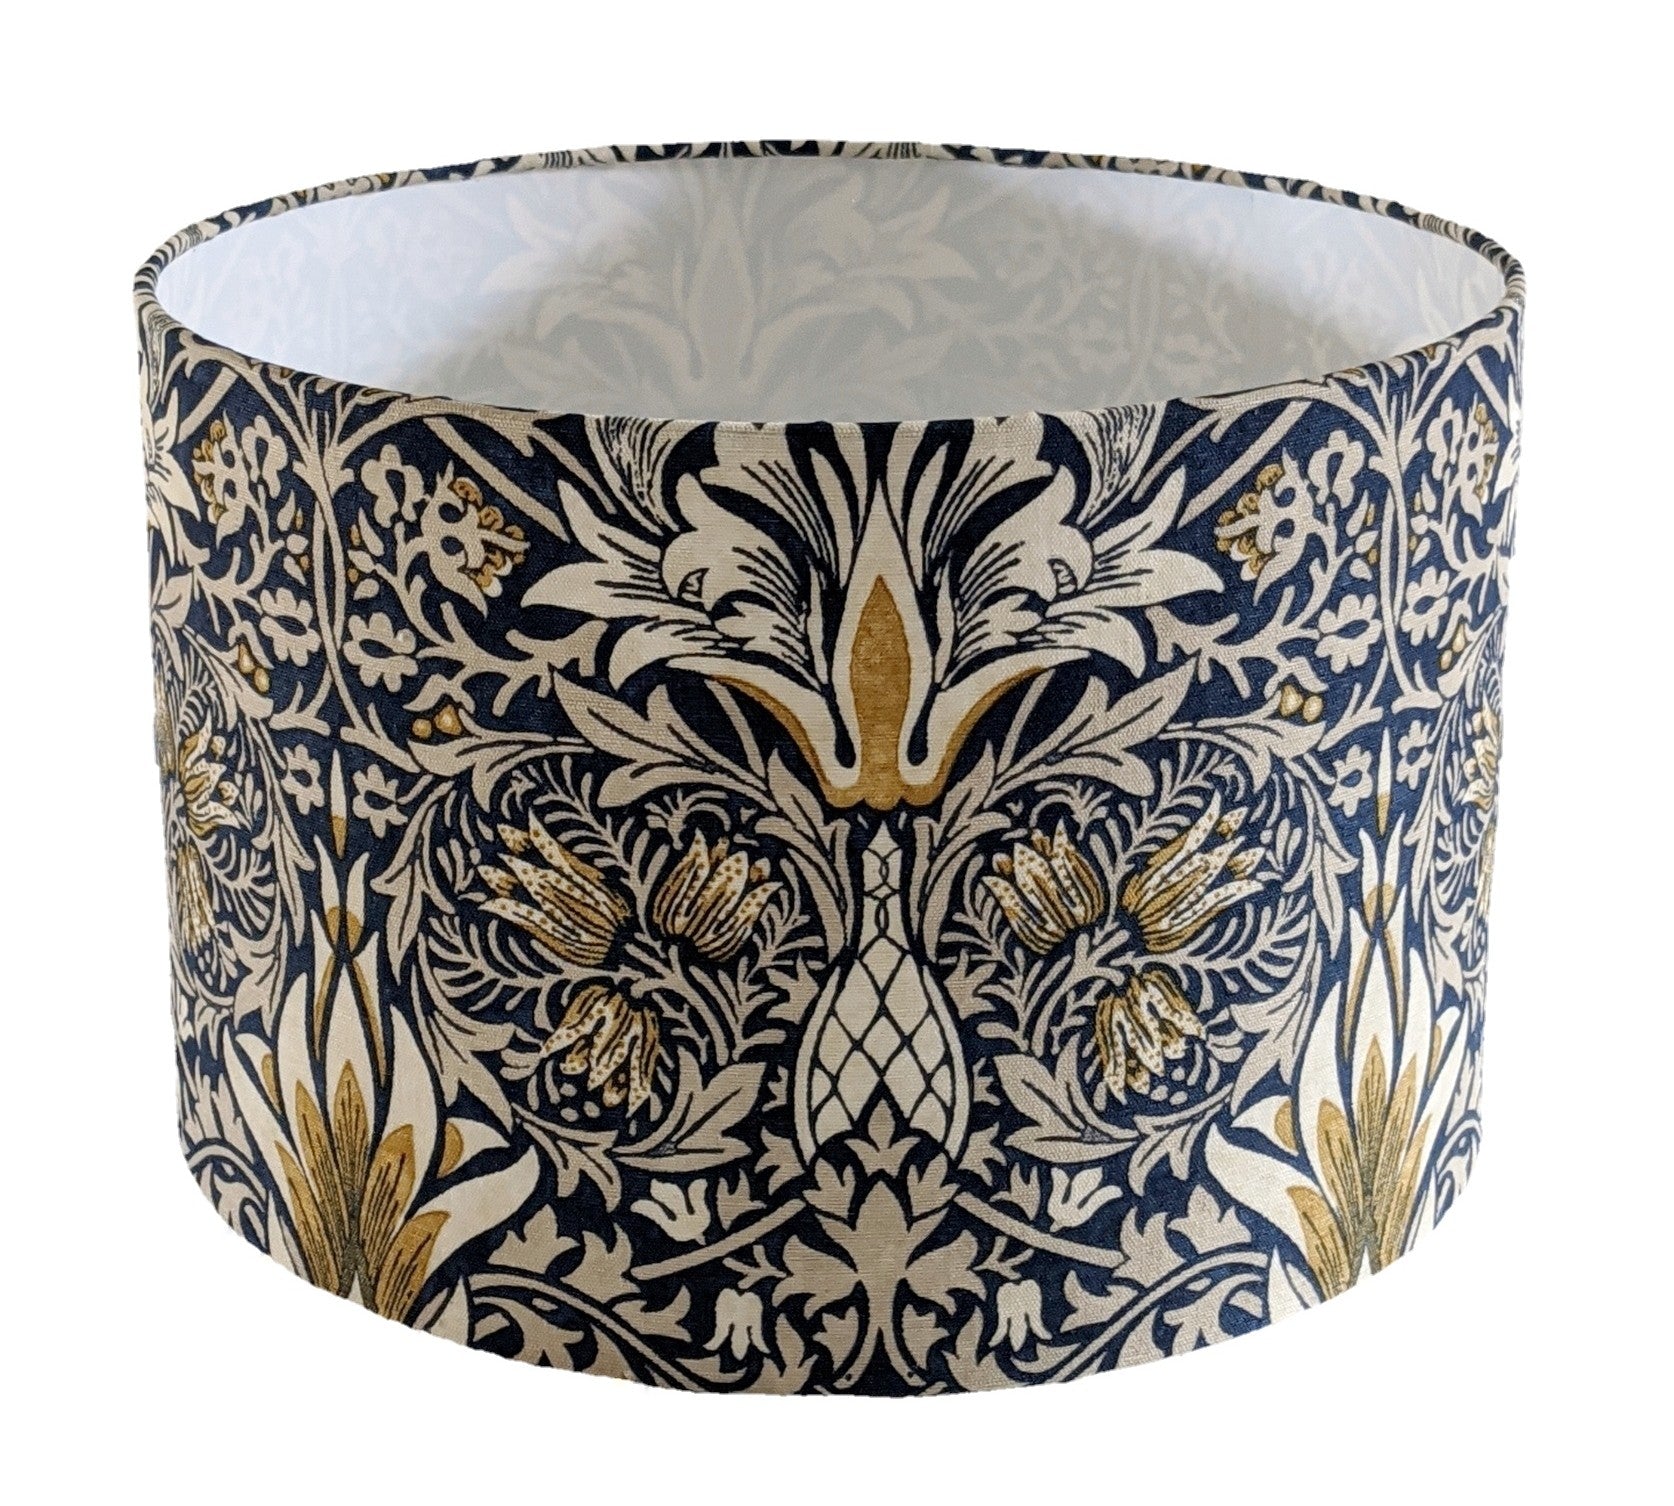 William Morris indigo snakeshead lampshade for a ceiling pendant -  20cm, 30cm and 40cm